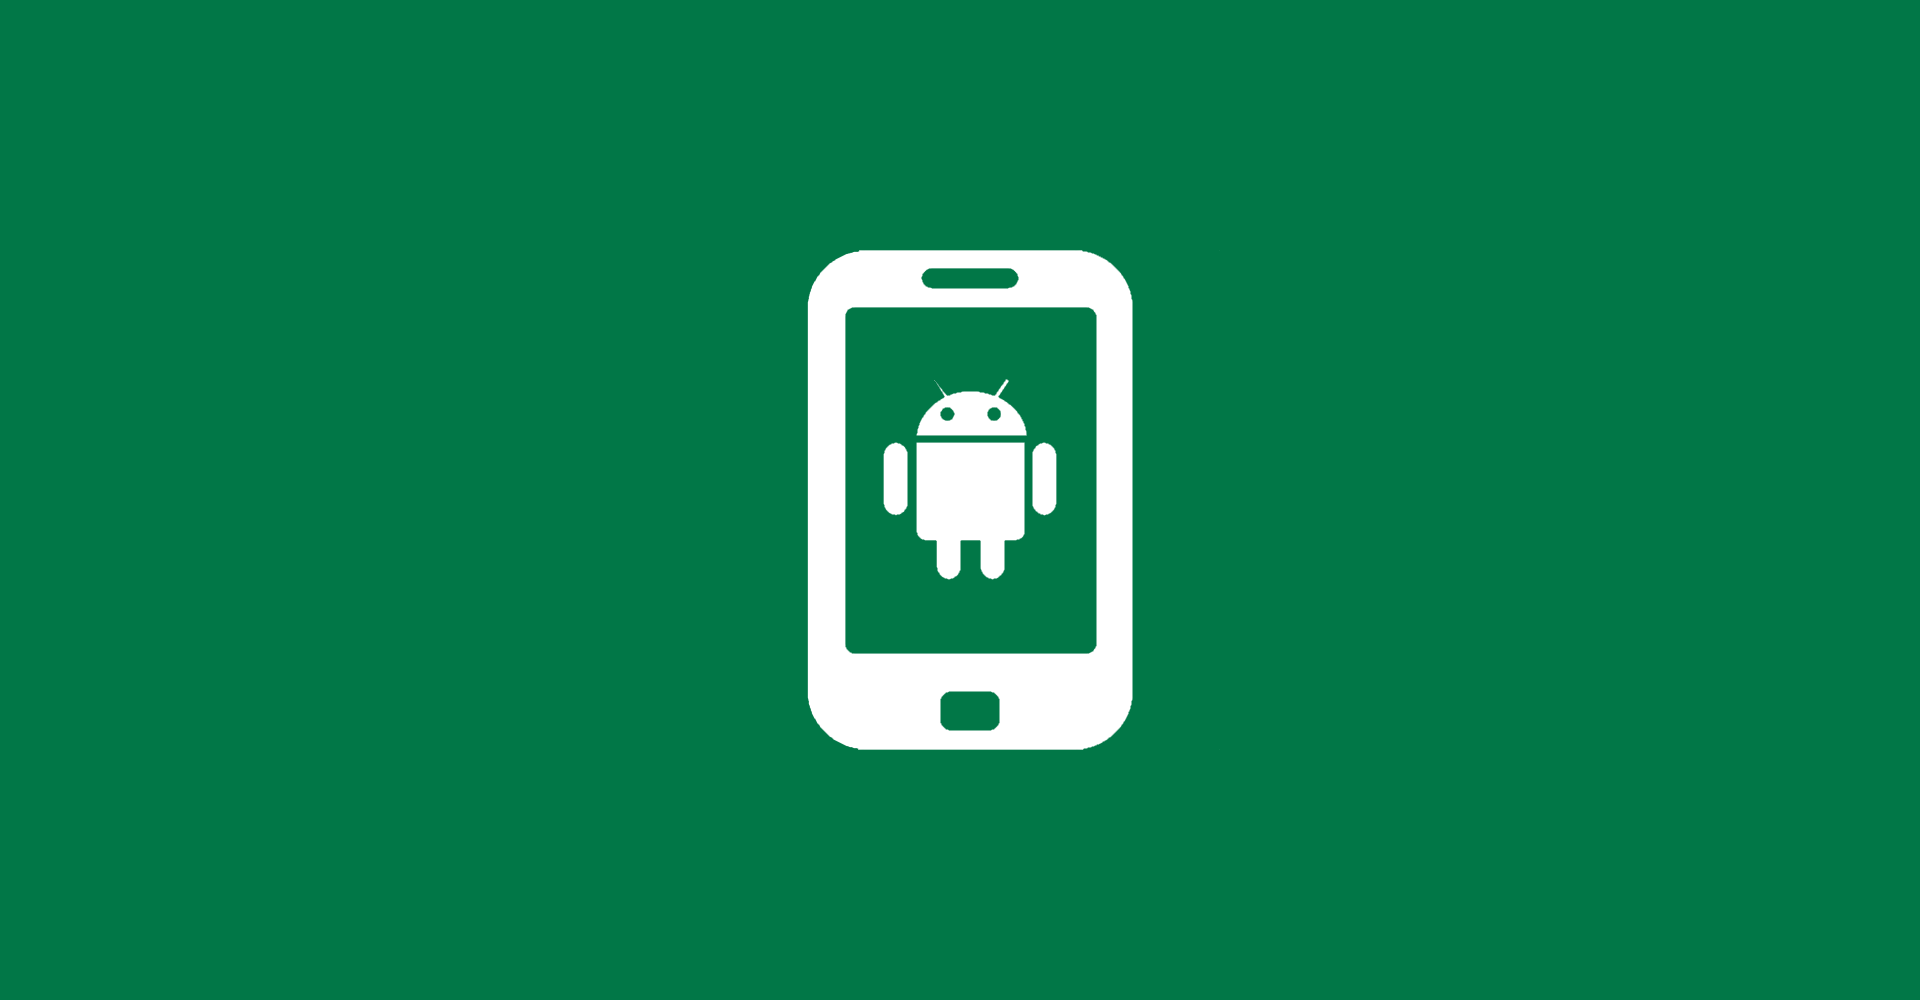 SCRCPY: Bildschirm von Android-Device auf Desktop spiegeln